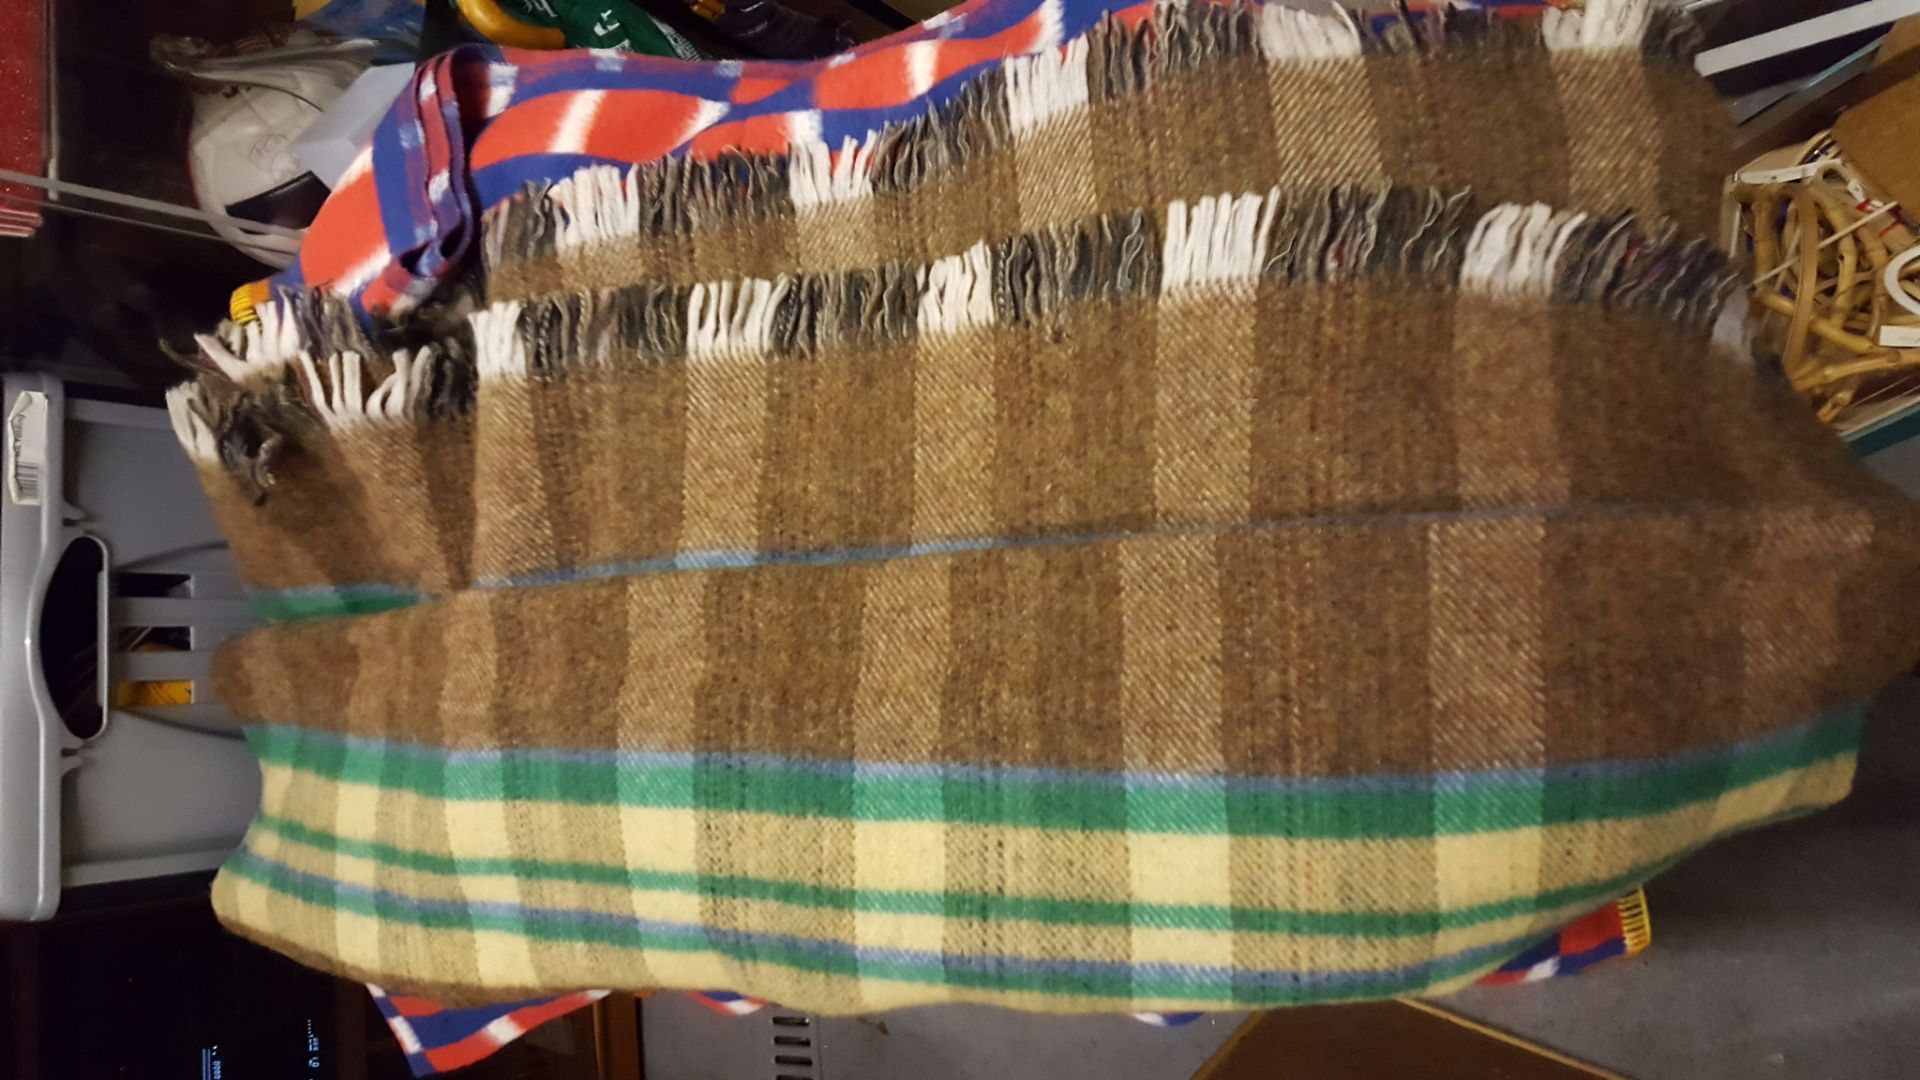 Bronte Tweed Travel Rug Plus 3 other travel rugs